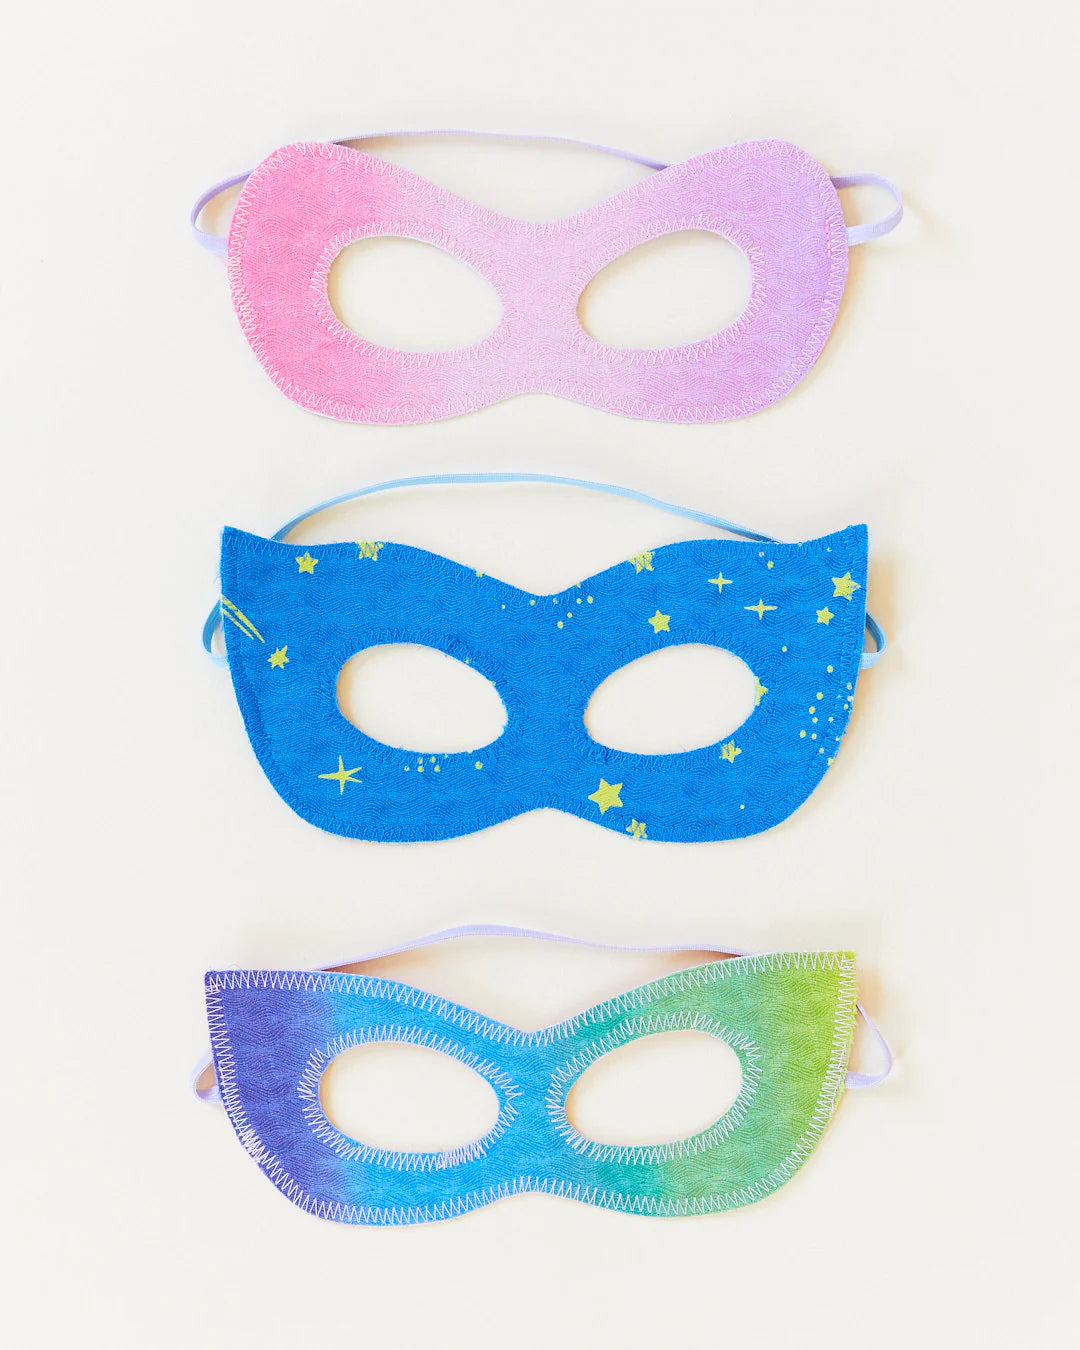 Sarah's Silks Masks